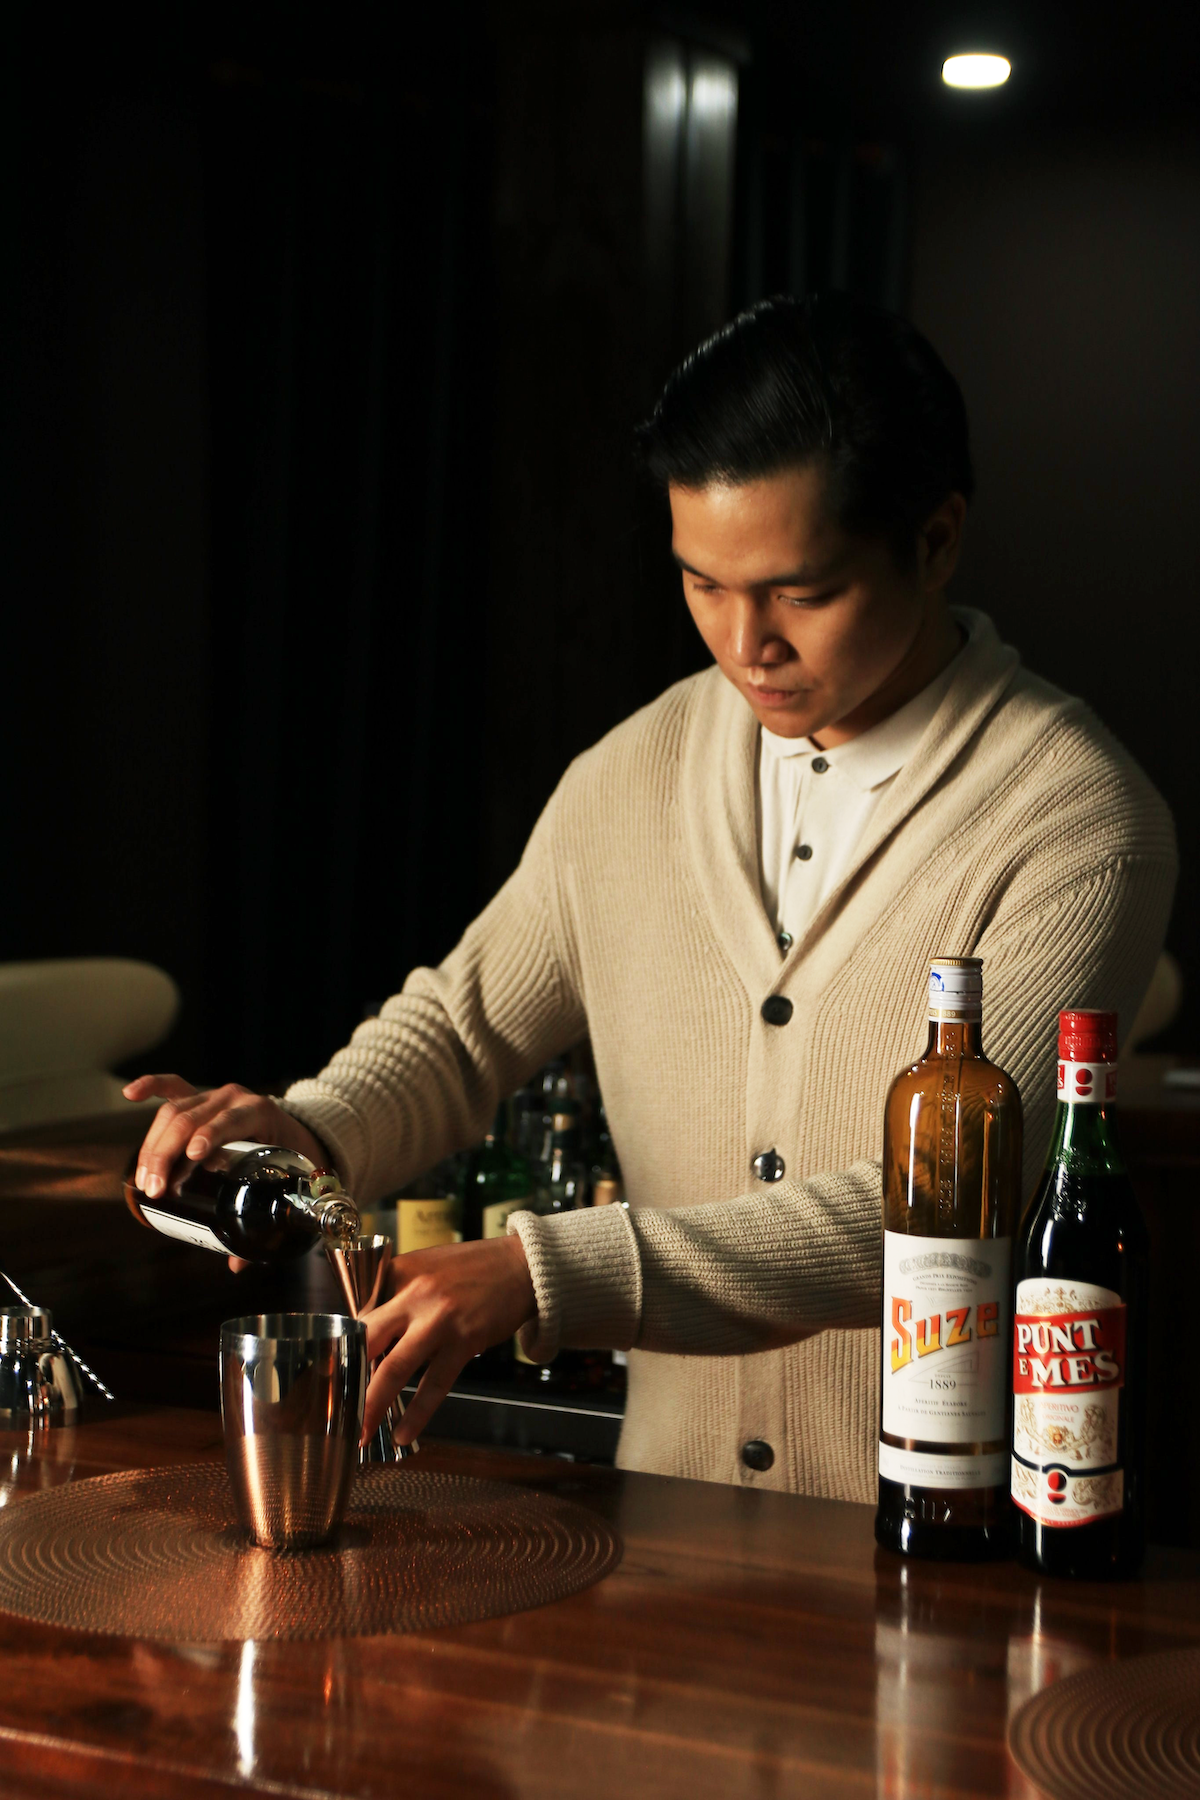 Precise cocktail skills Tủ Bar and Phạm Hồng Toàn